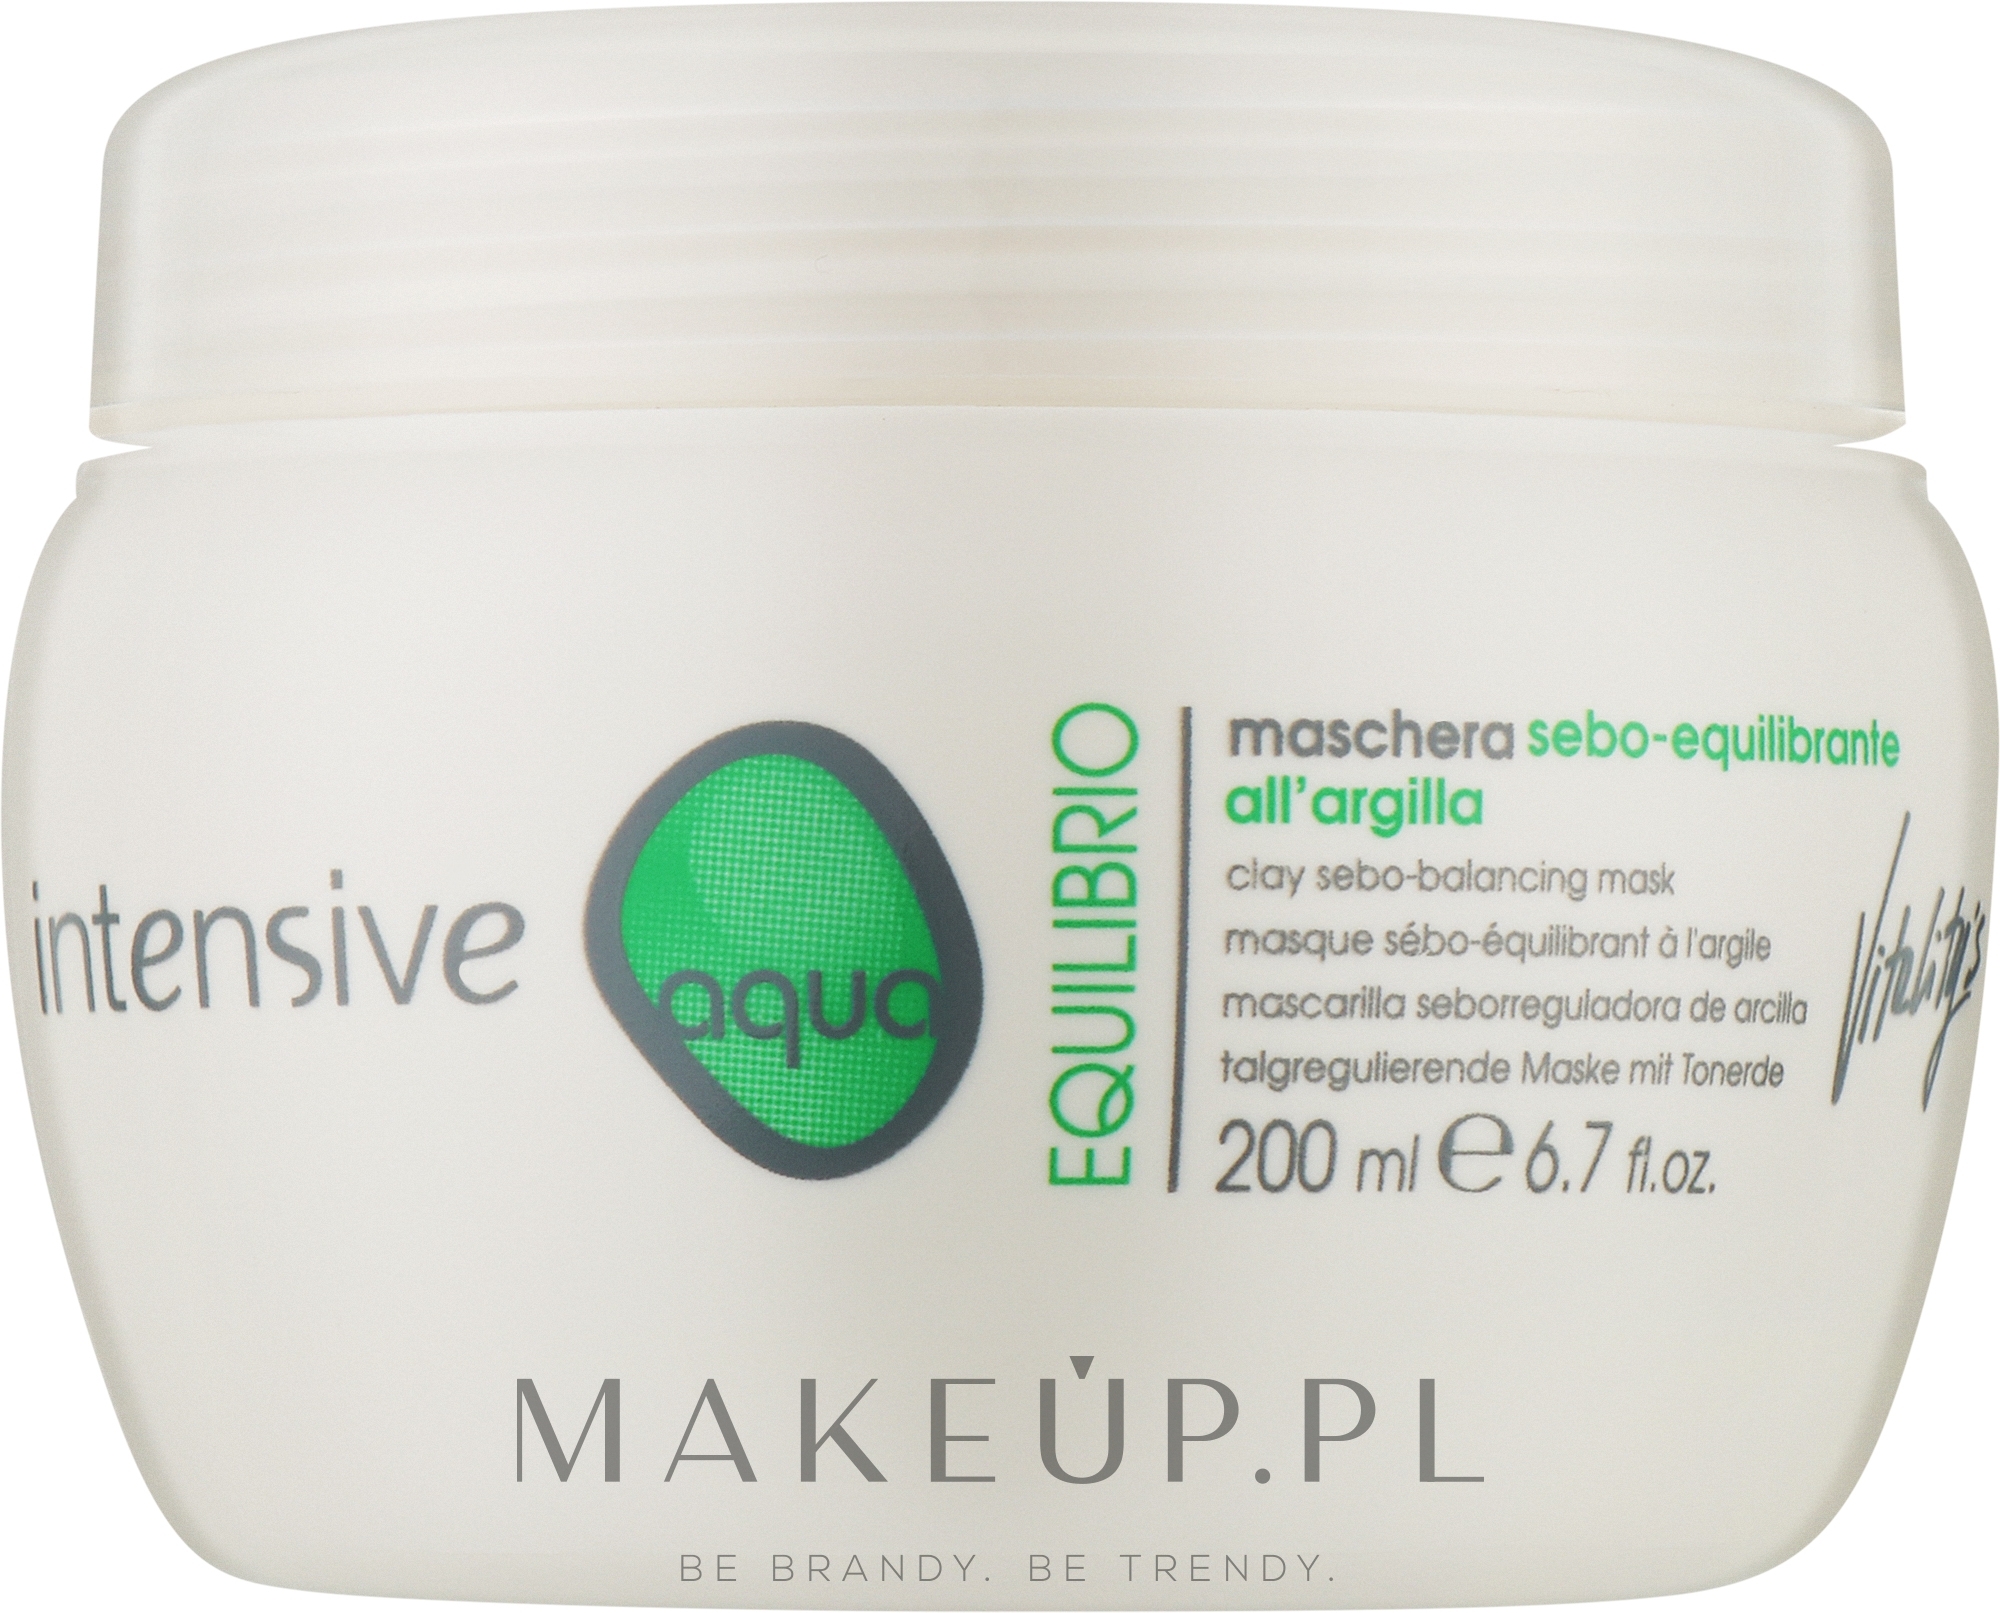 Maska do włosów na bazie glinki białej - Vitality's Intensive Aqua Equilibrio Sebo-Balancing Mask — Zdjęcie 200 ml